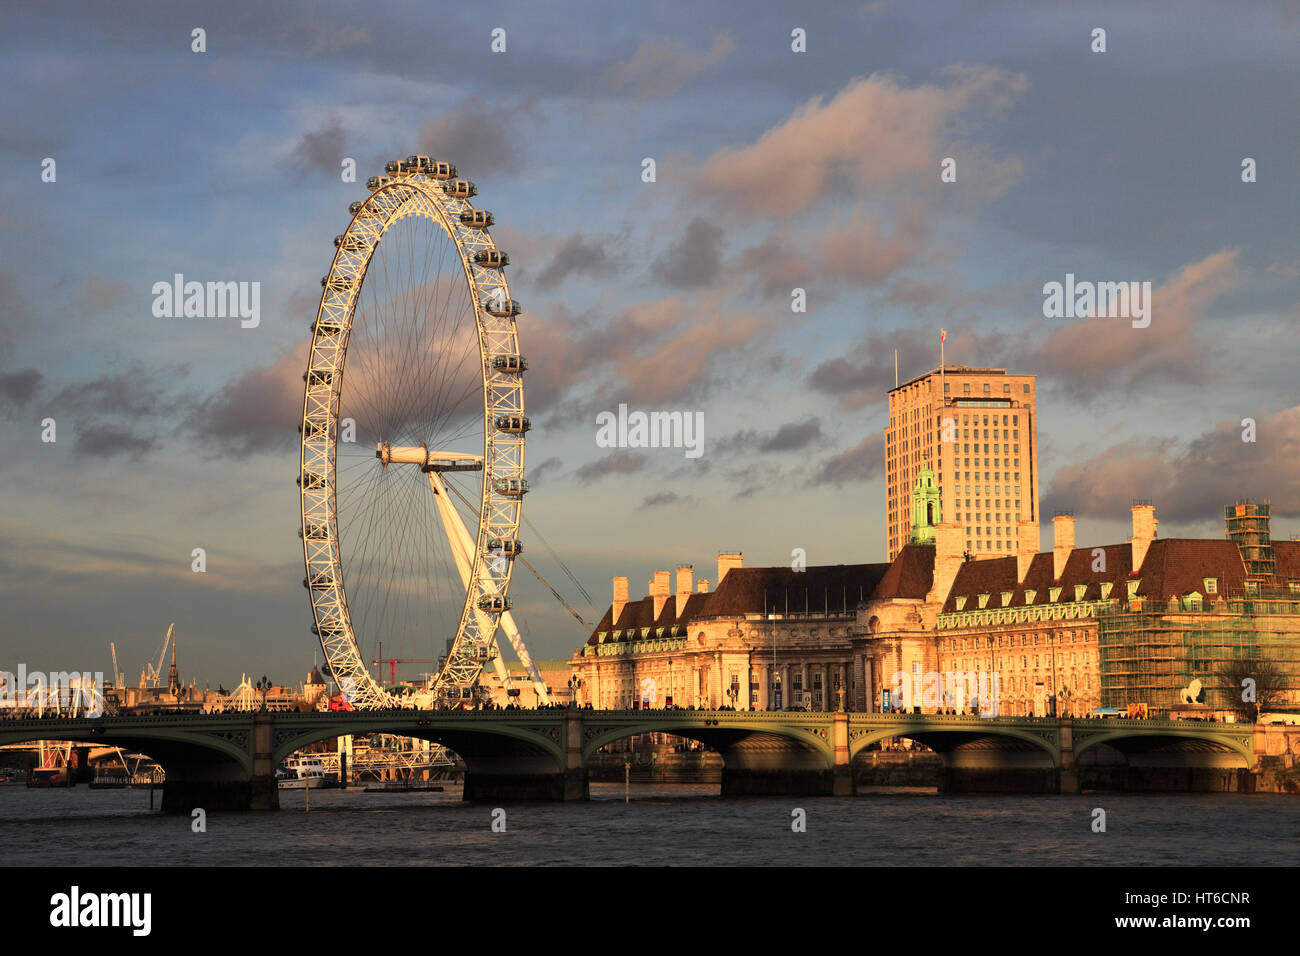 Atardecer de verano, el London eye o Noria del Milenio se inauguró en 1999, South Bank, el río Támesis, Lambeth, Londres, Inglaterra Foto de stock